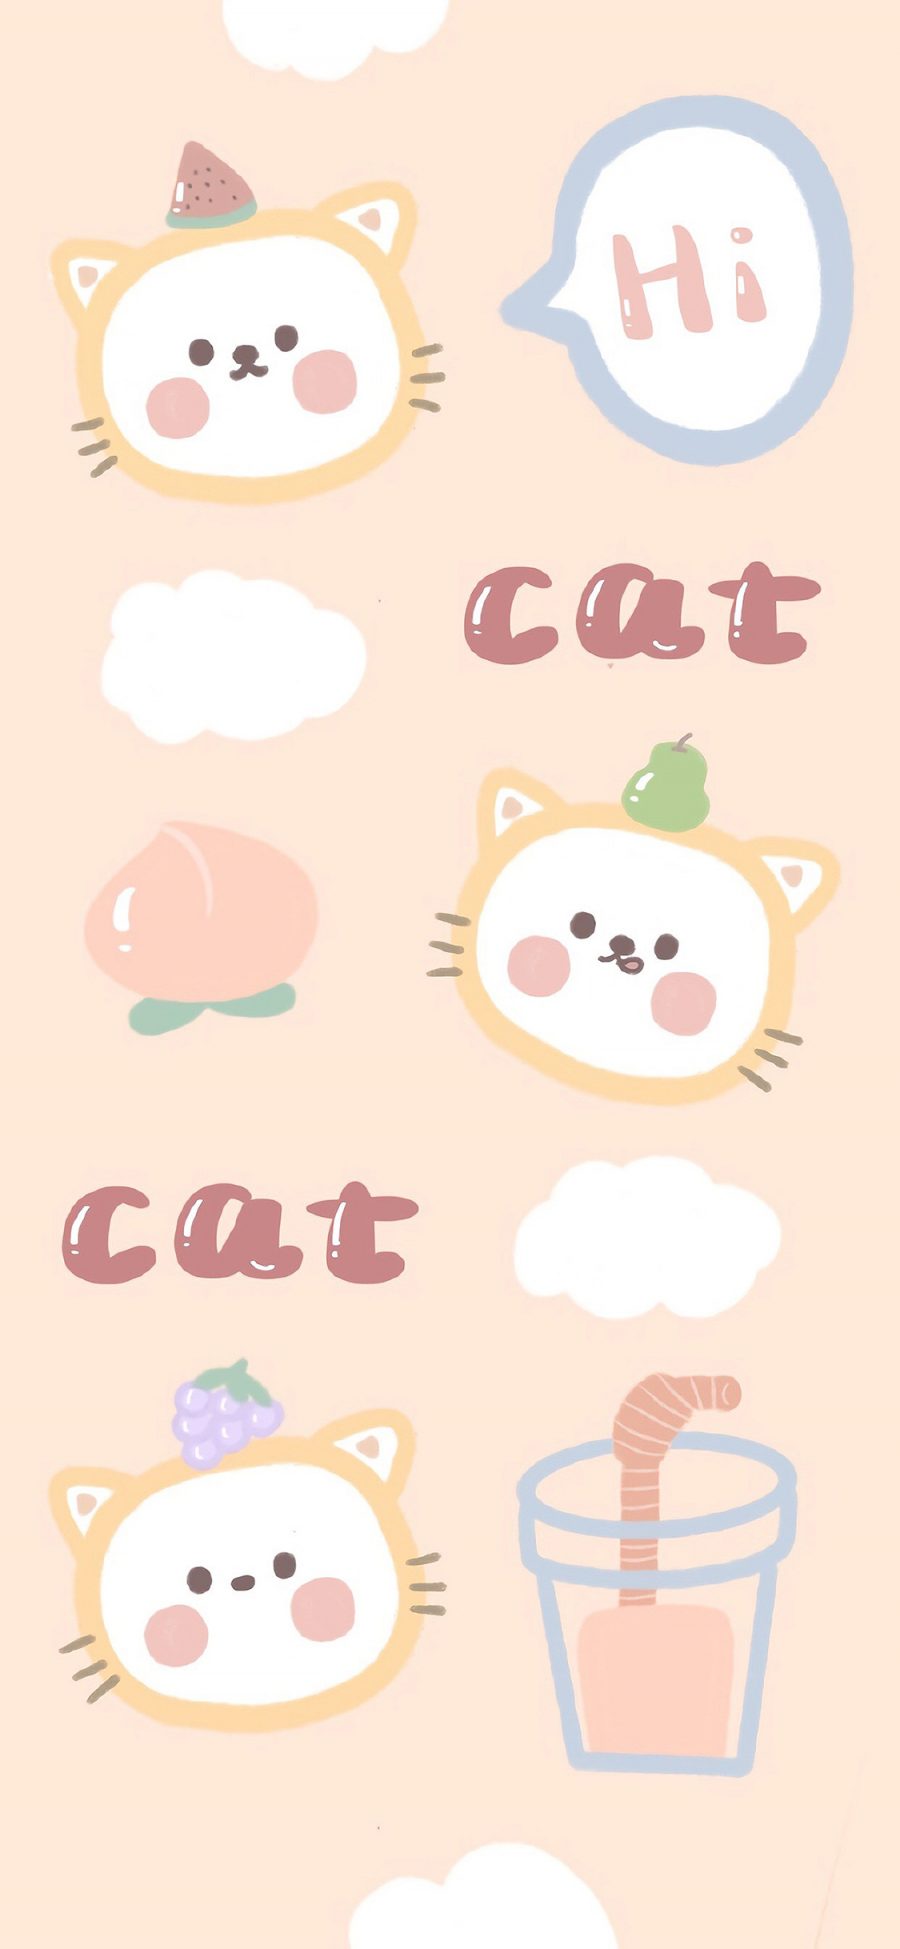 [2436×1125]cat 猫咪 hi 插画 可爱 苹果手机动漫壁纸图片